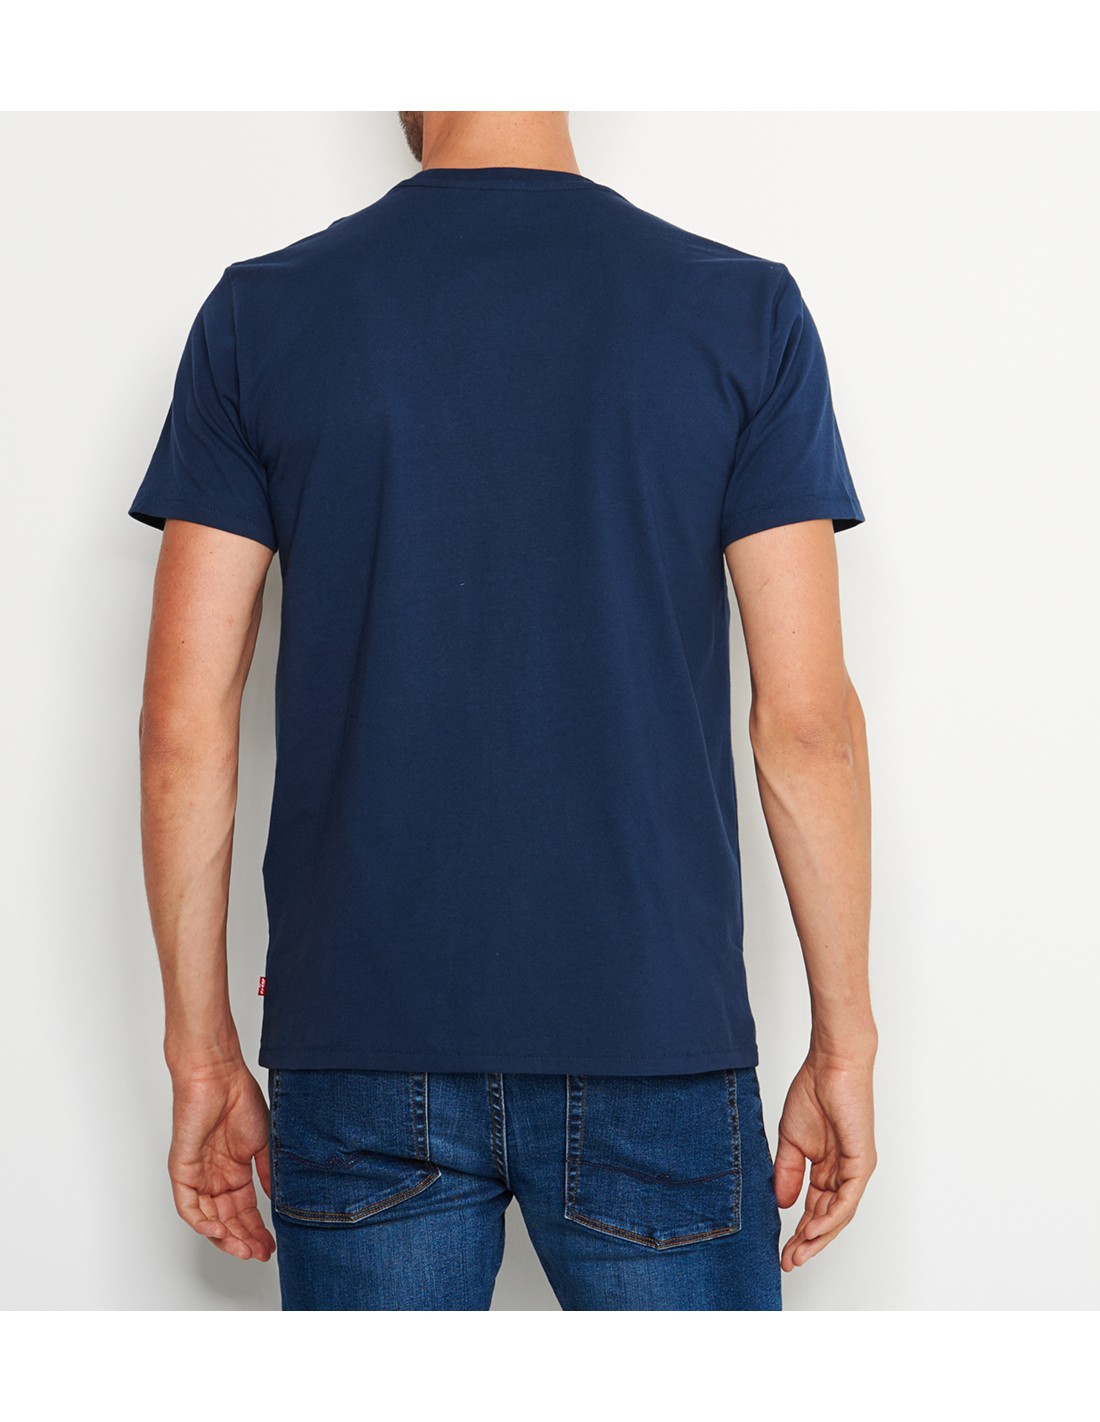 T-Shirt Levi's Homme Bleu Marine